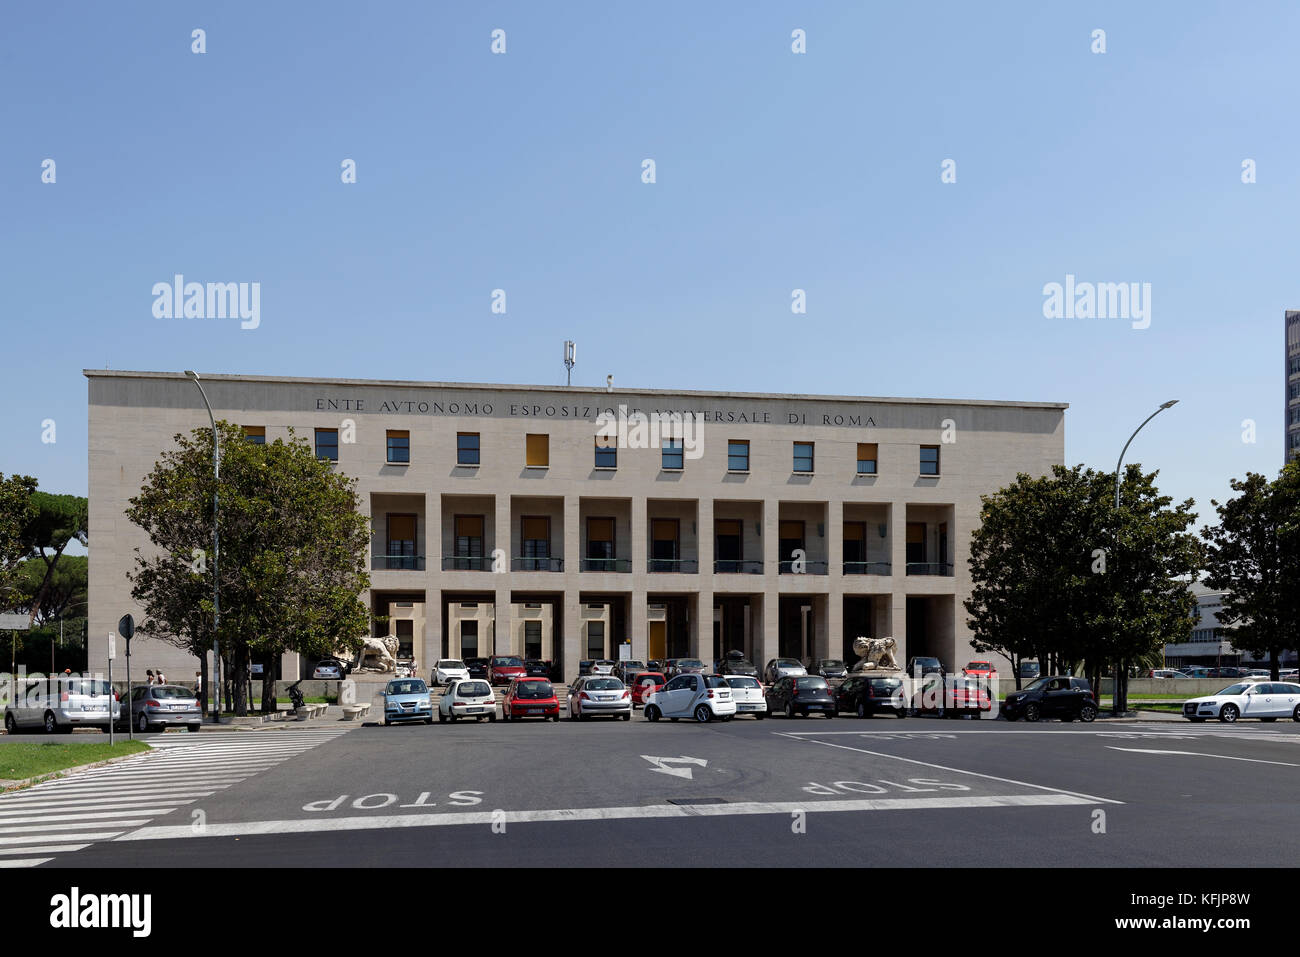 The facade of the Palazzo Uffici building inscribed with Ente Autonomo Esposizione Universale di Roma. EUR. Rome. Italy. Stock Photo